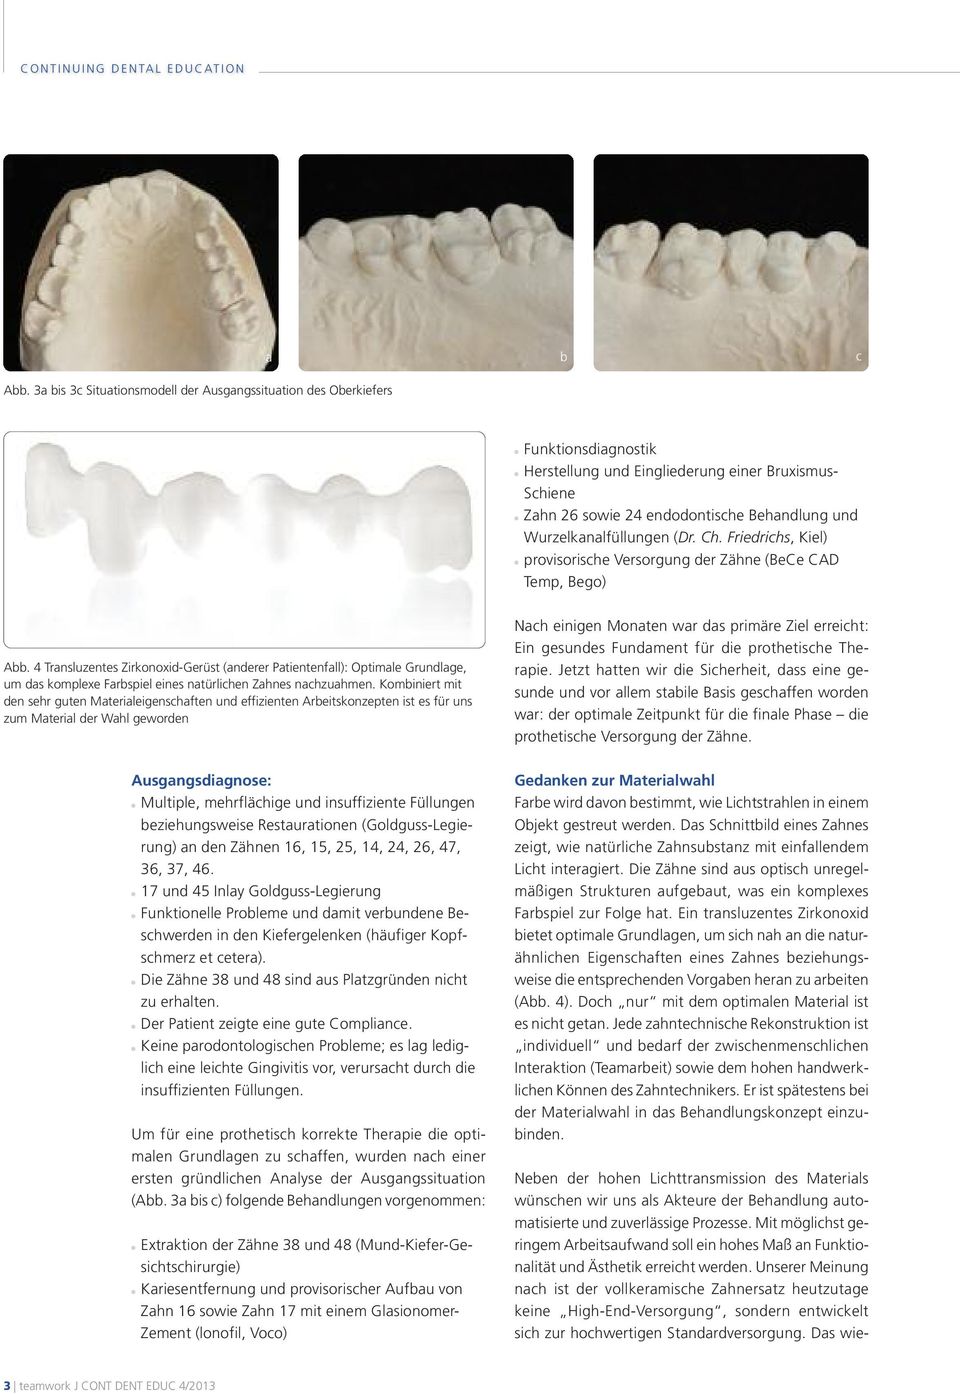 4 Transluzentes Zirkonoxid-Gerüst (anderer Patientenfall): Optimale Grundlage, um das komplexe Farbspiel eines natürlichen Zahnes nachzuahmen.